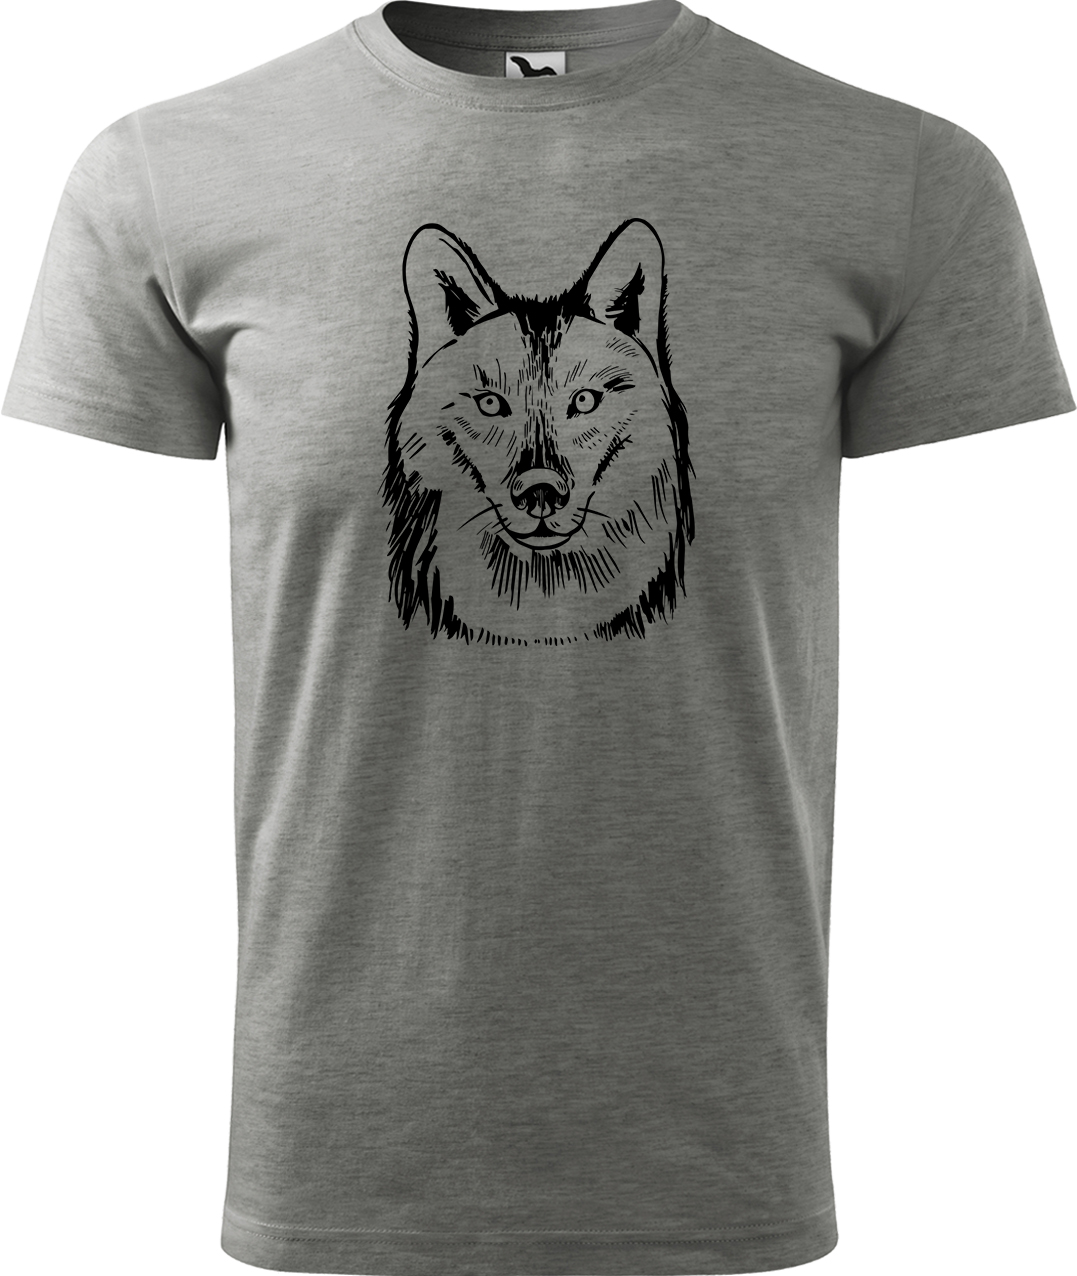 Pánské tričko s vlkem - Kresba vlka Velikost: 3XL, Barva: Tmavě šedý melír (12), Střih: pánský